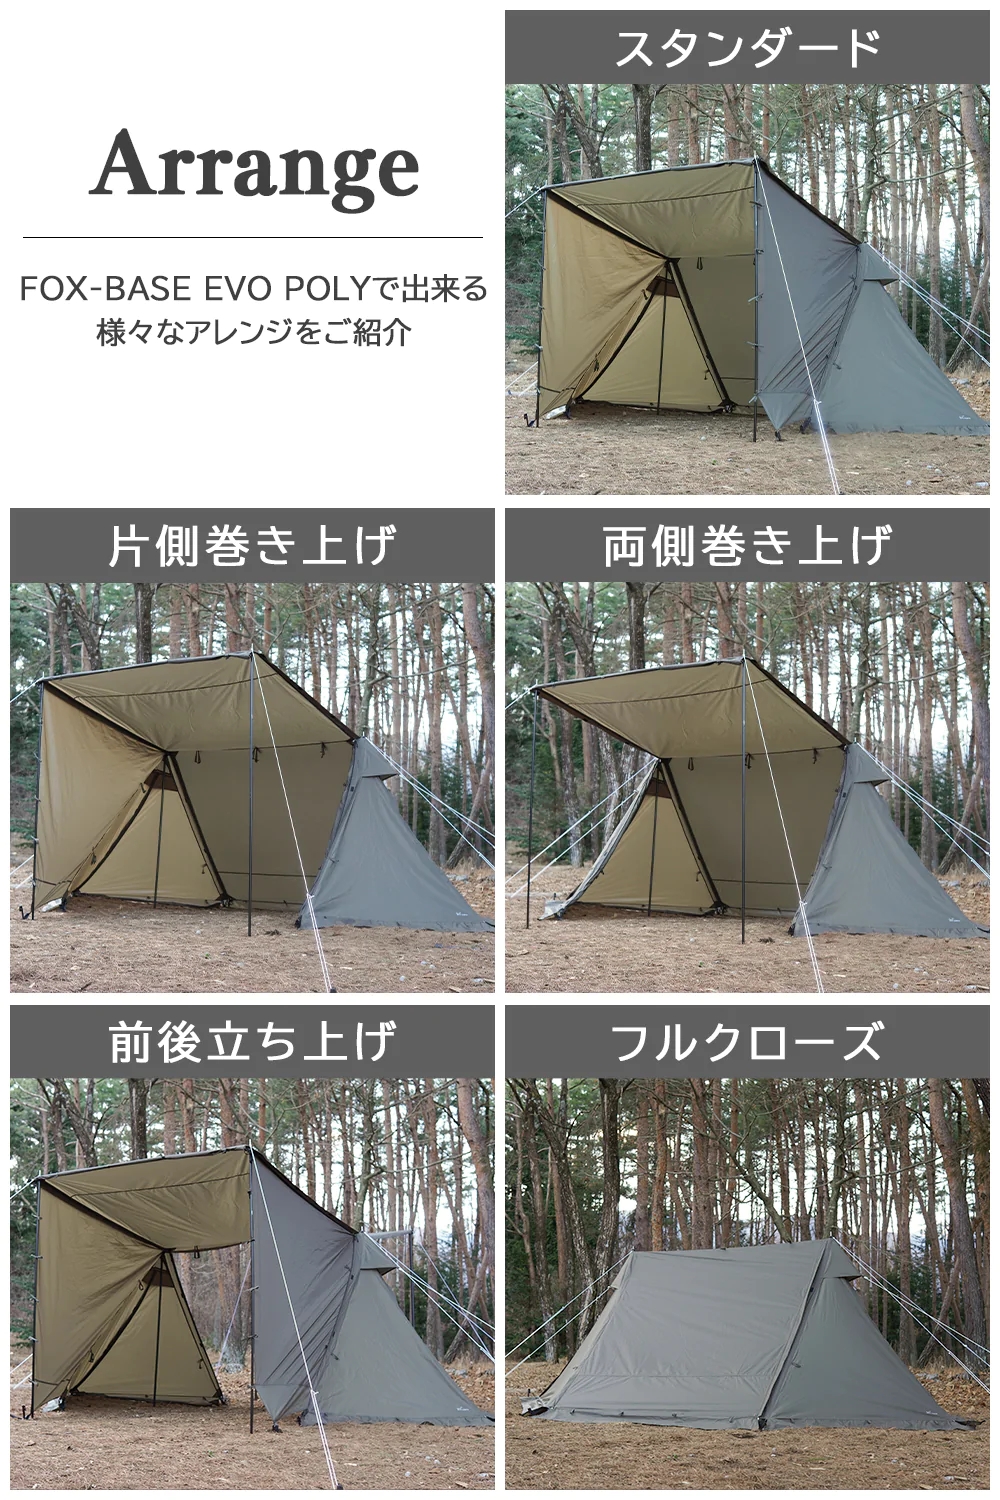 FOX-BASE EVO POLYの設営パターン